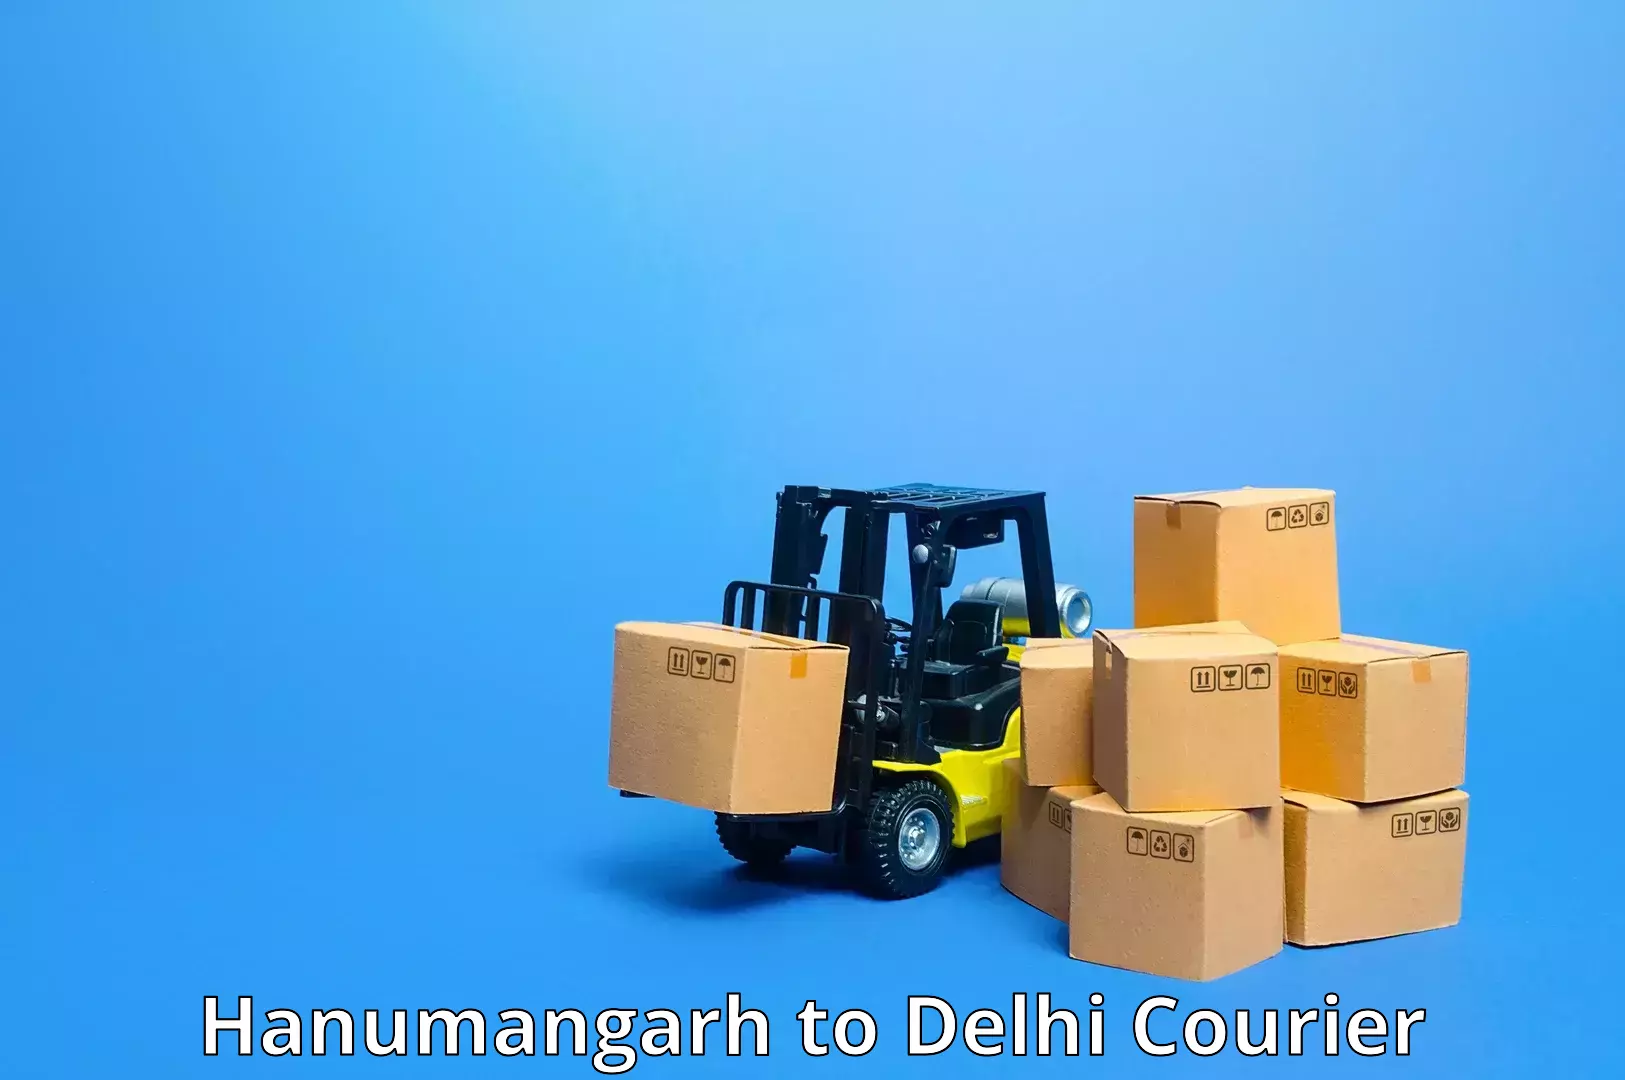 Cargo delivery service Hanumangarh to Delhi